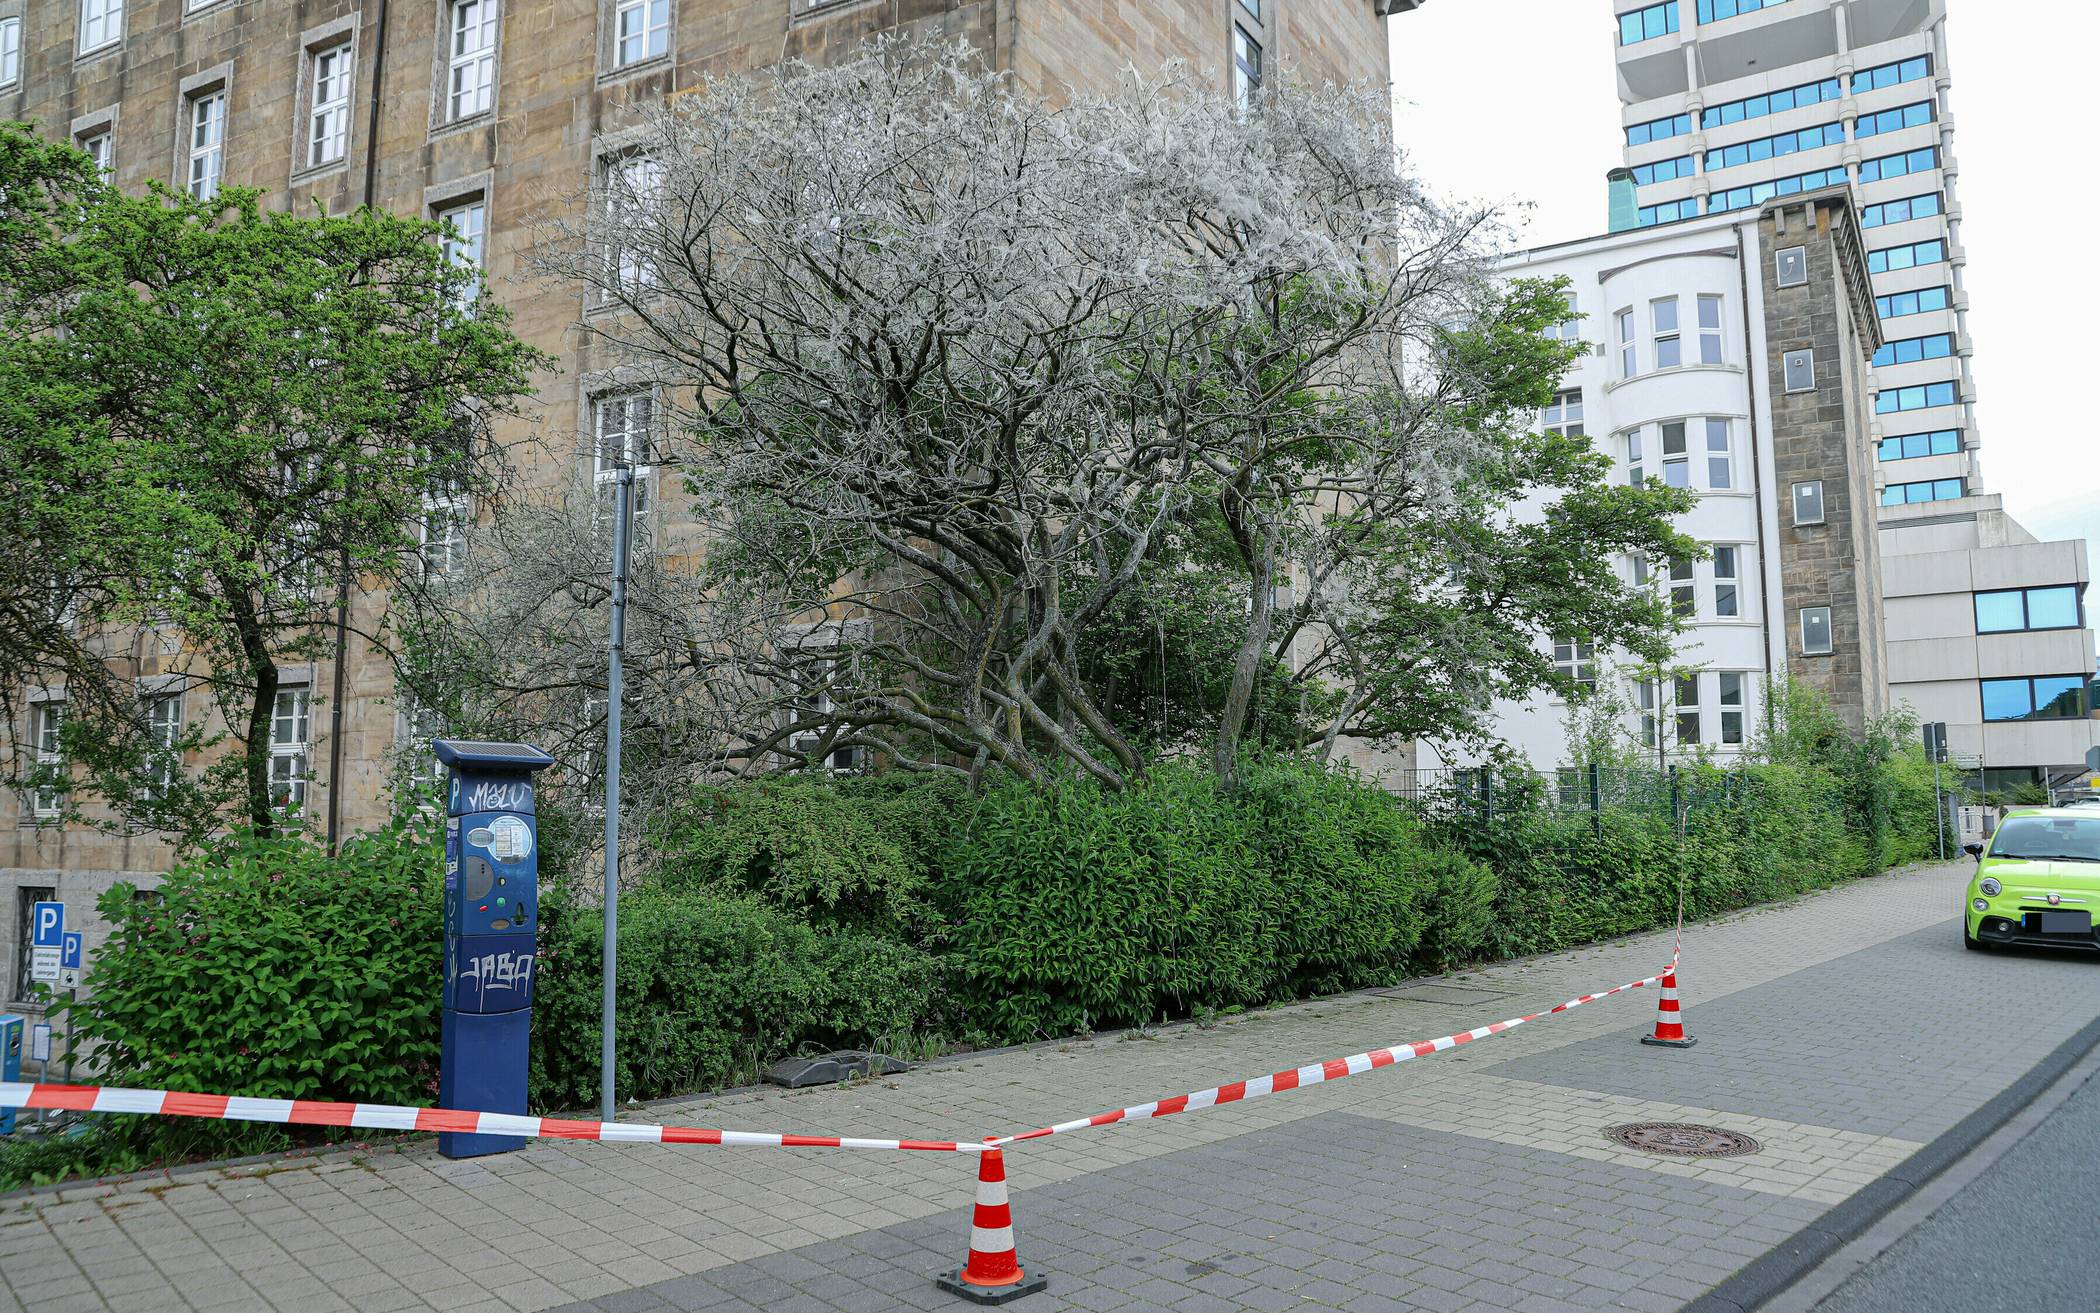 Baum mit Gespinstmotten – Bürgersteig gesperrt